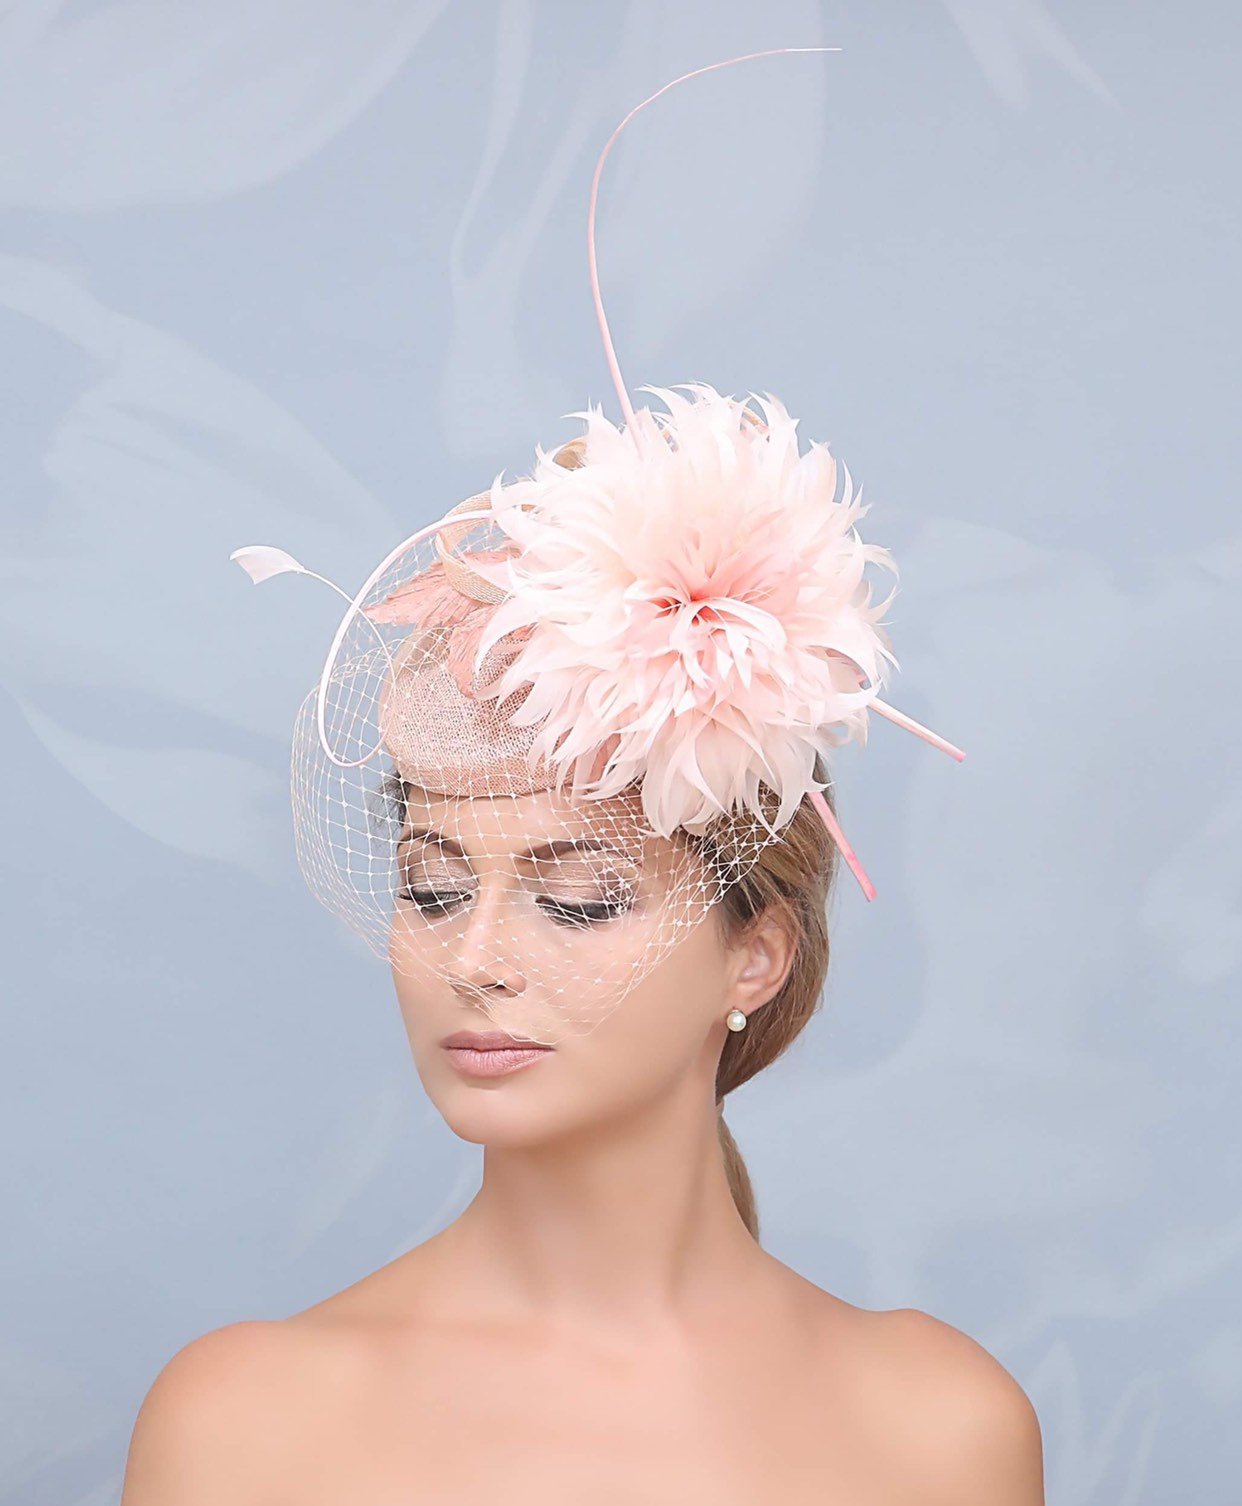 Blush pink hat. Peach hat. Fascinator. Kentucky derby hat. Derby hat. Royal ascot hat. Designer hat. Wedding hat. Fashion hat. Pink fascinat